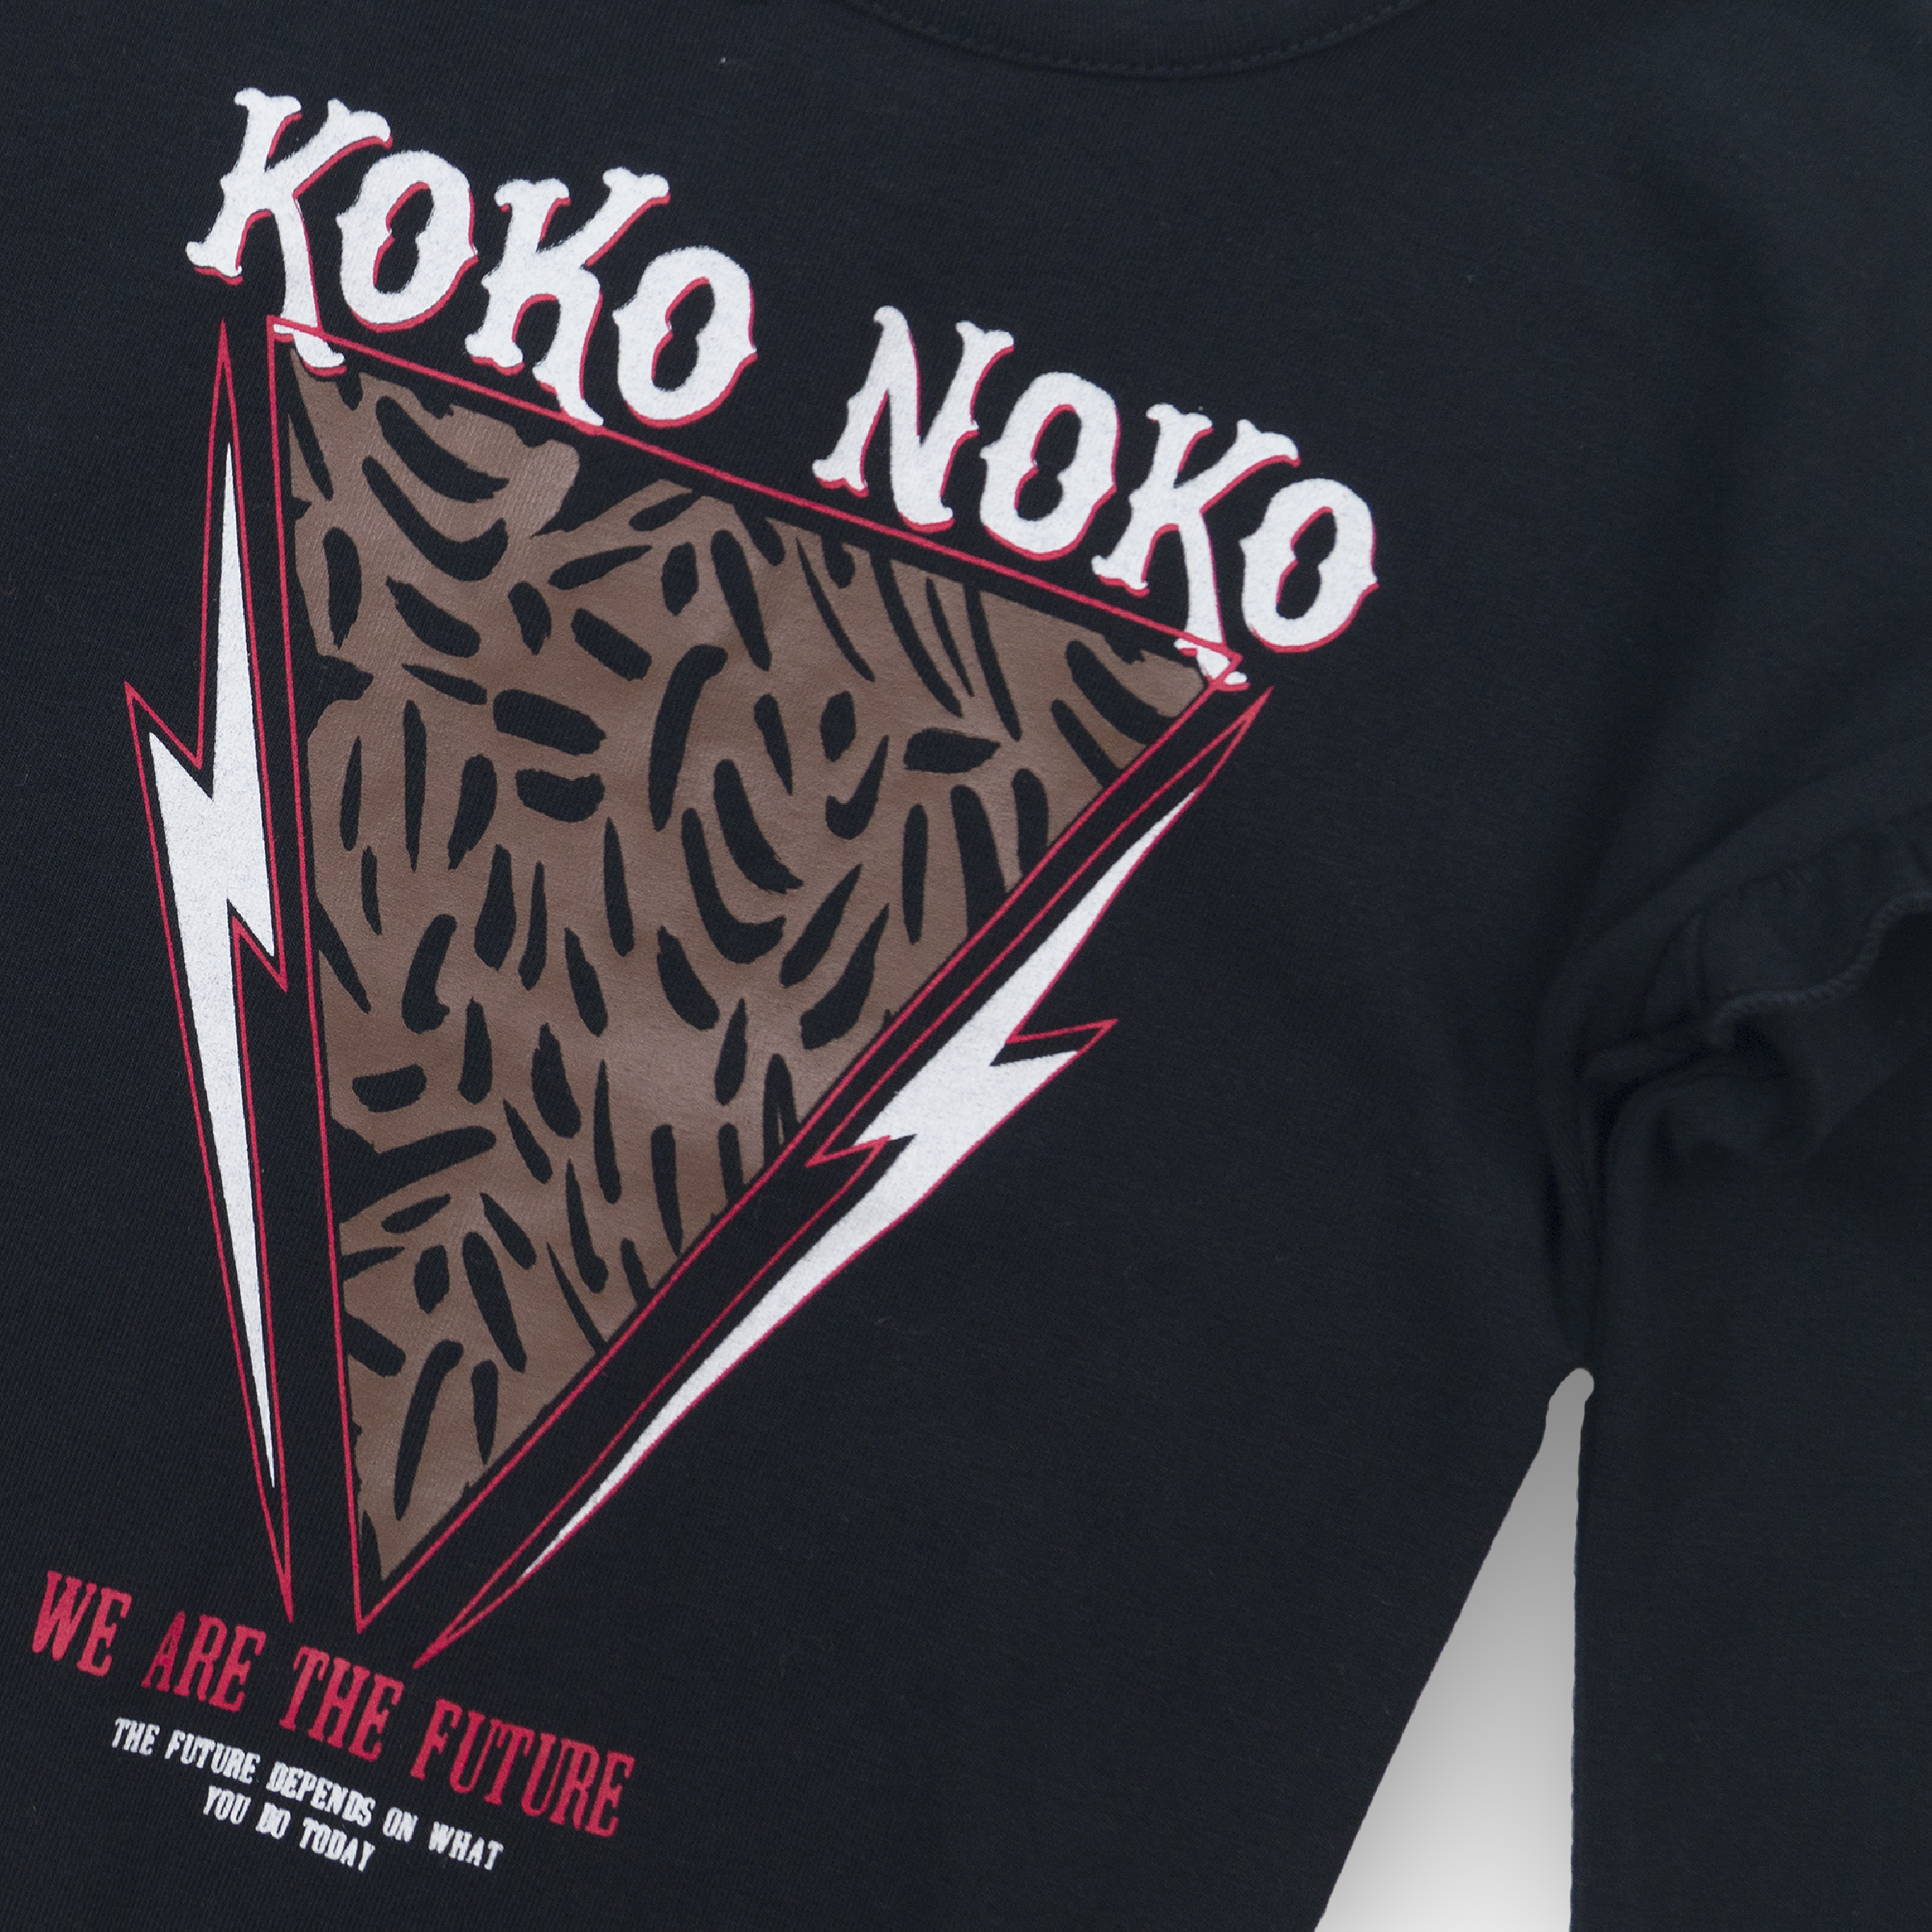 Meisjes T-shirt van Koko Noko in de kleur Black in maat 86.